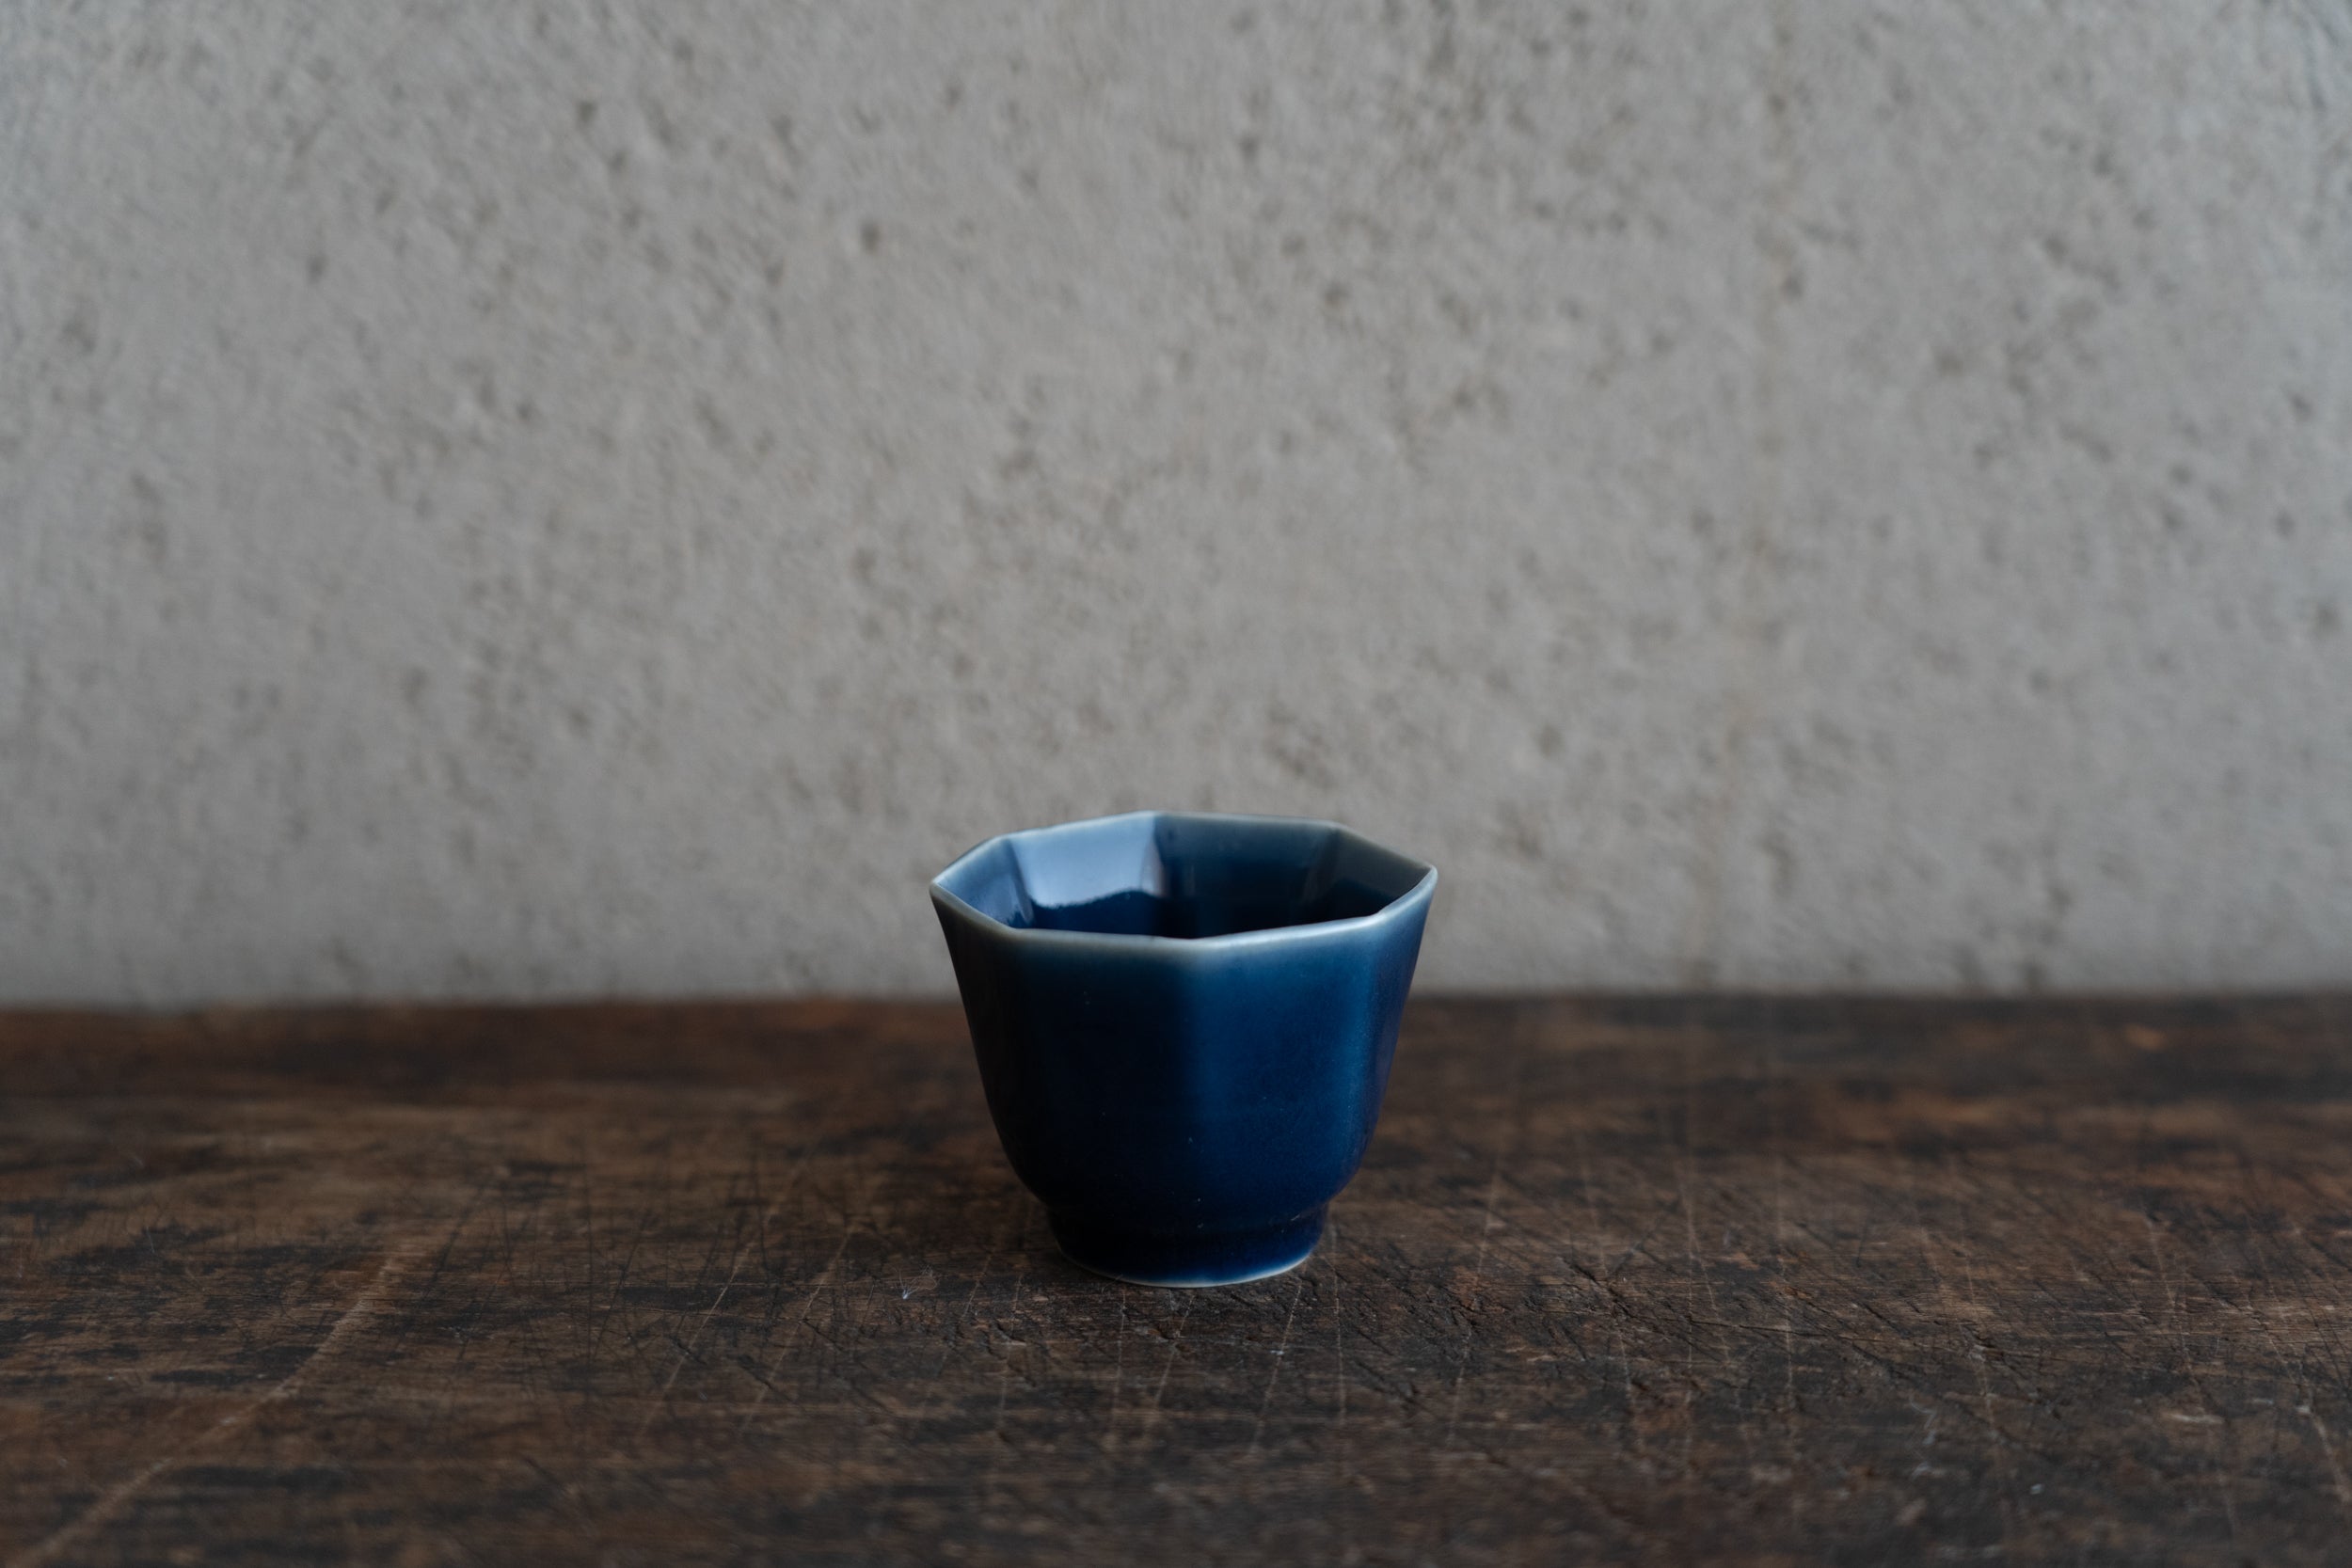 Old Imari lapis lazuli glaze octagonal choko cup